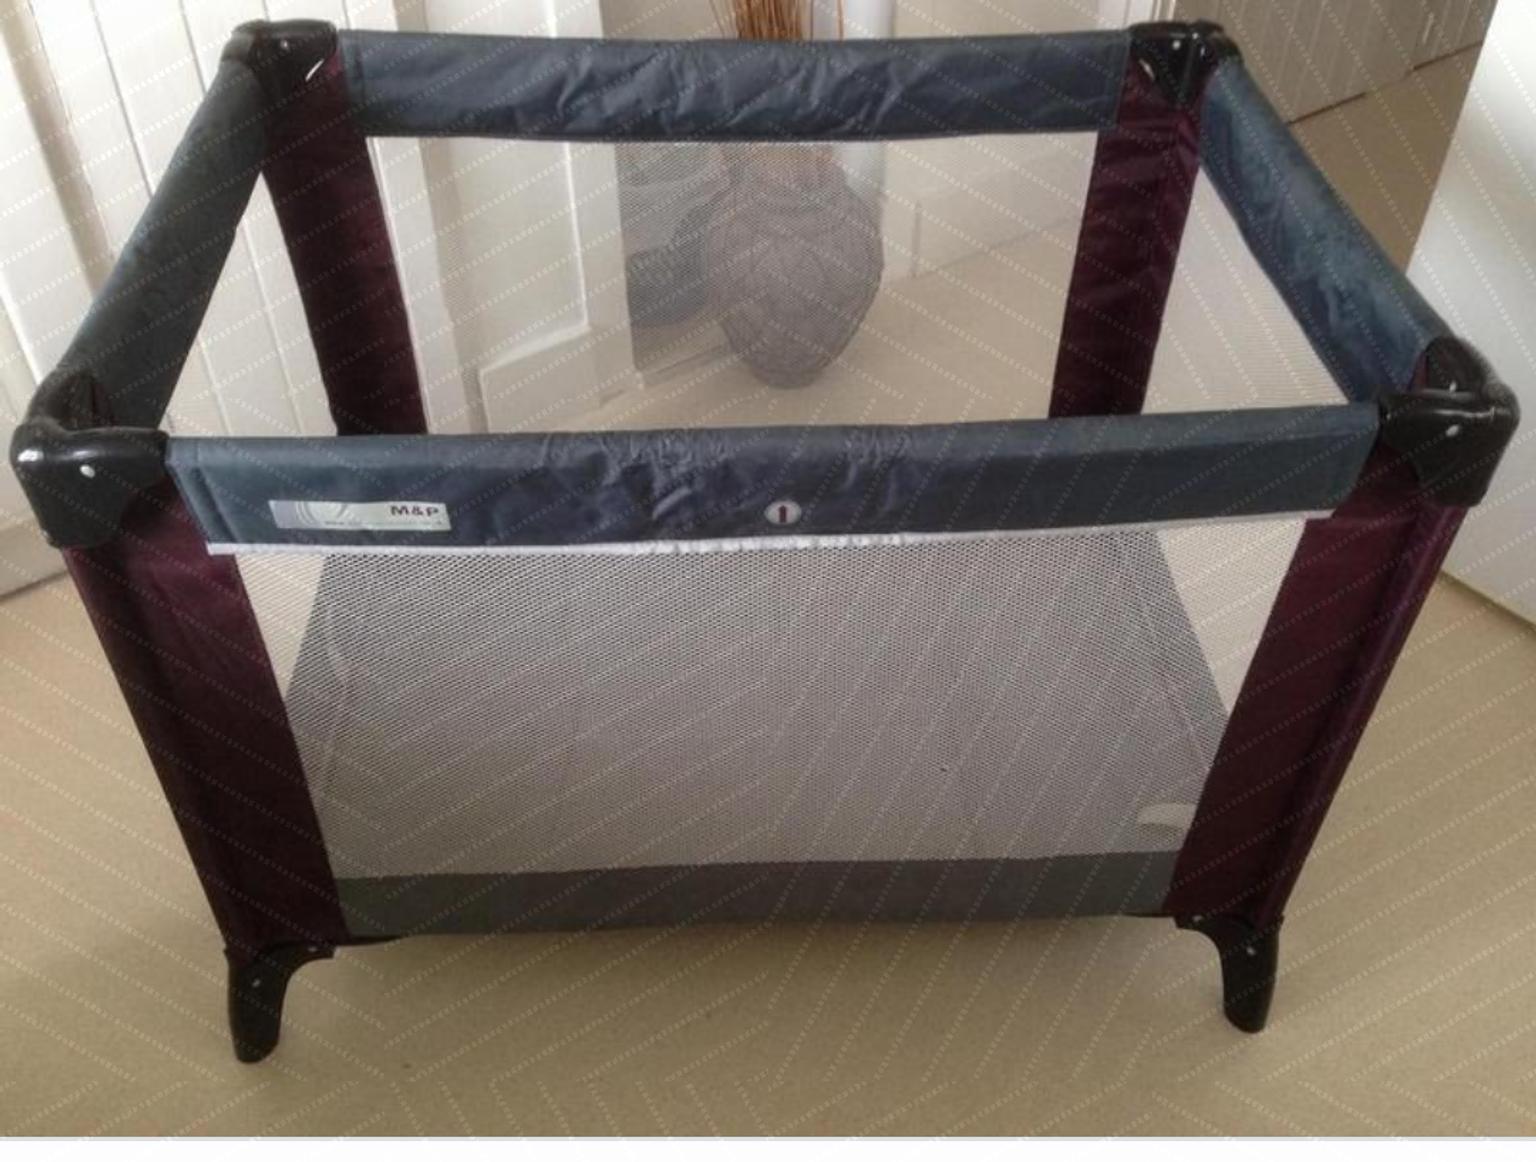 mamas & papas travel cot mattress